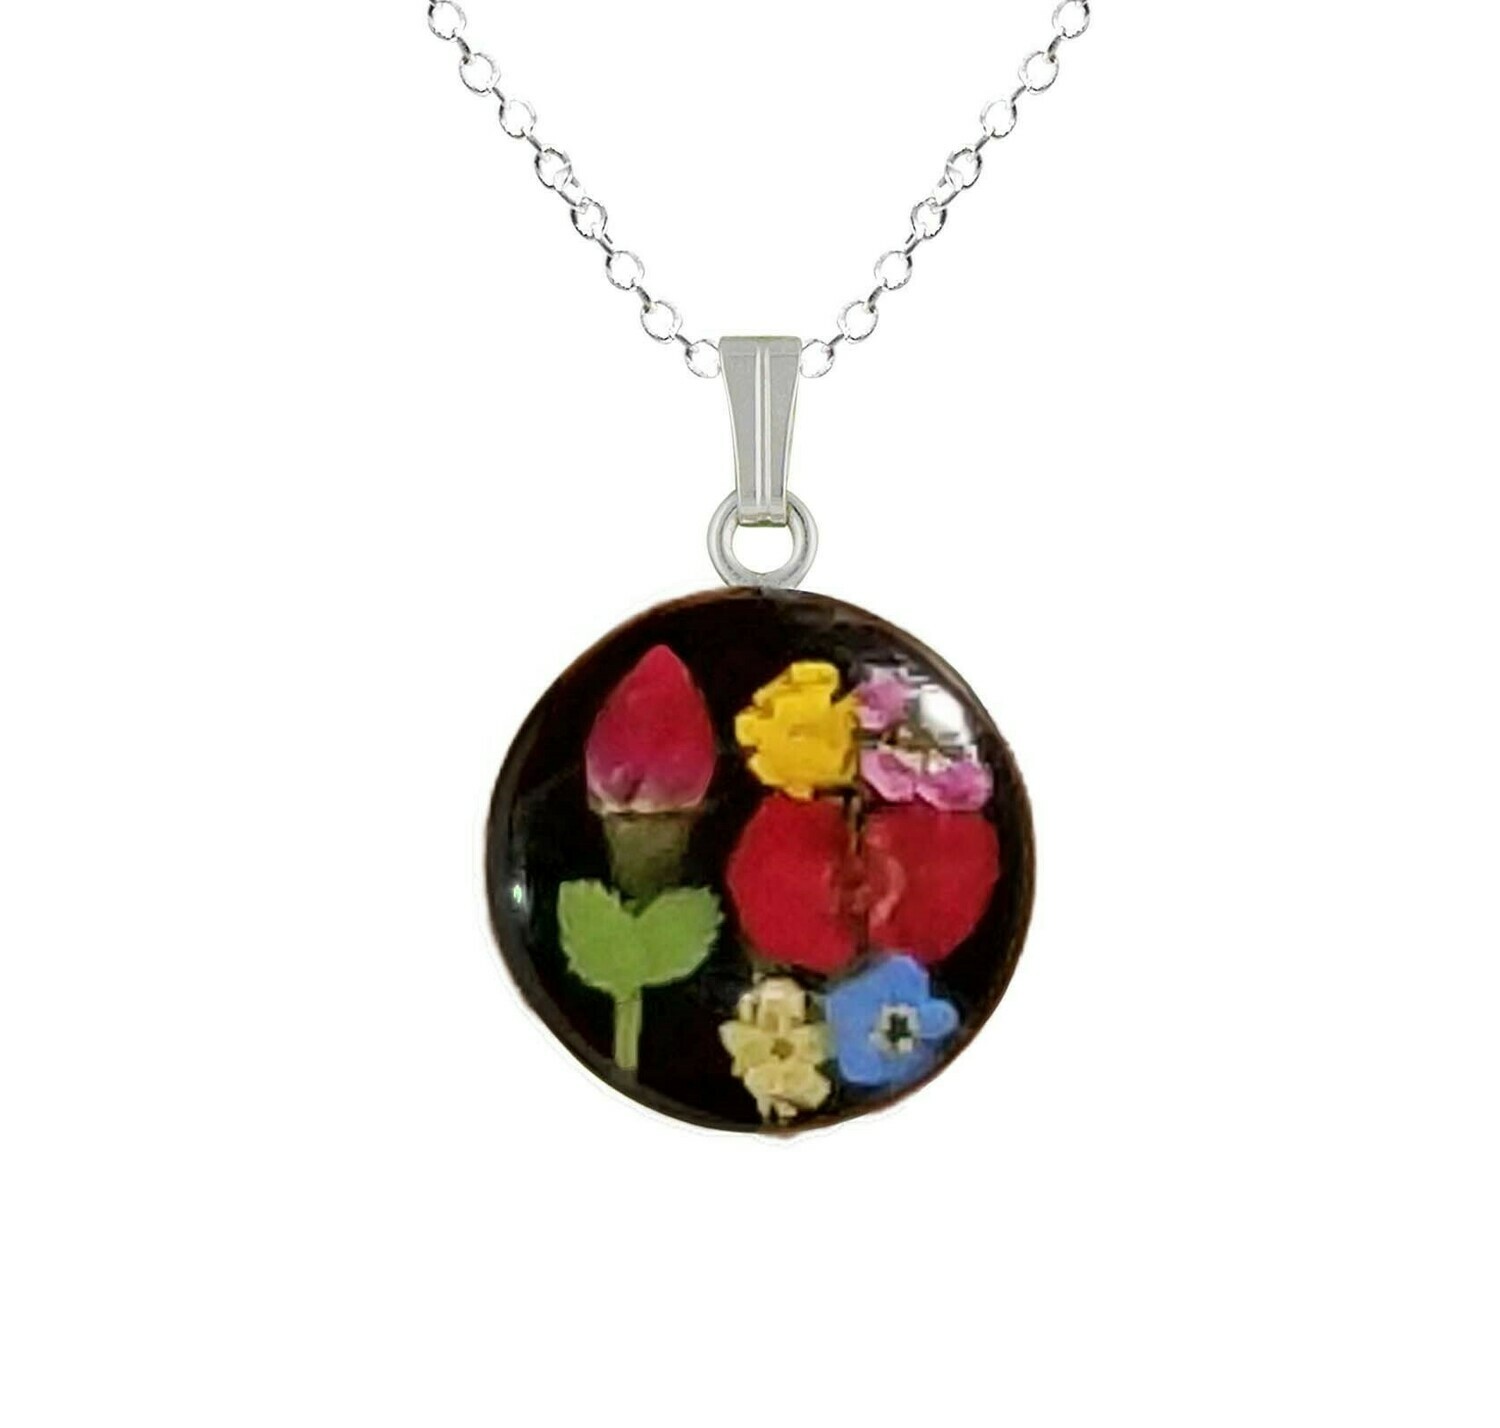 Rose & Mix Flowers Necklace, Medium Circle, Black Background